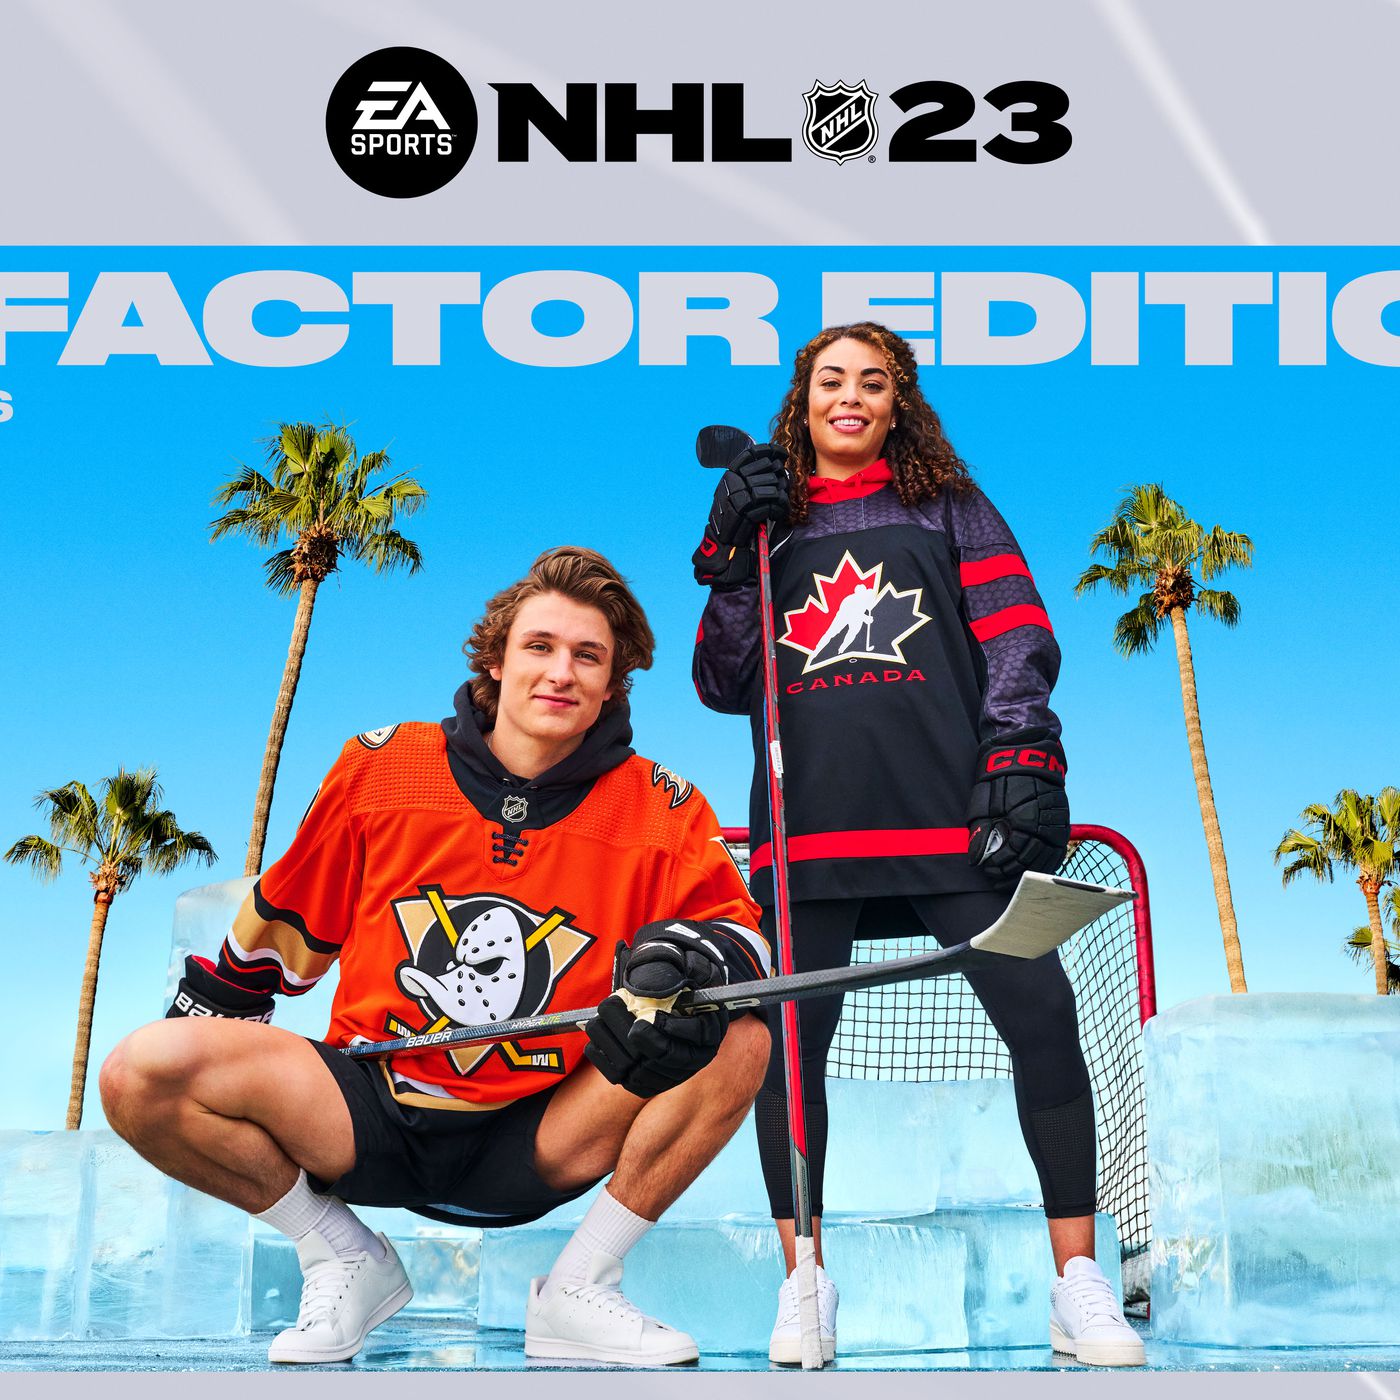 NHL 23 cover stars revealed: Trevor Zegras, Sarah Nurse